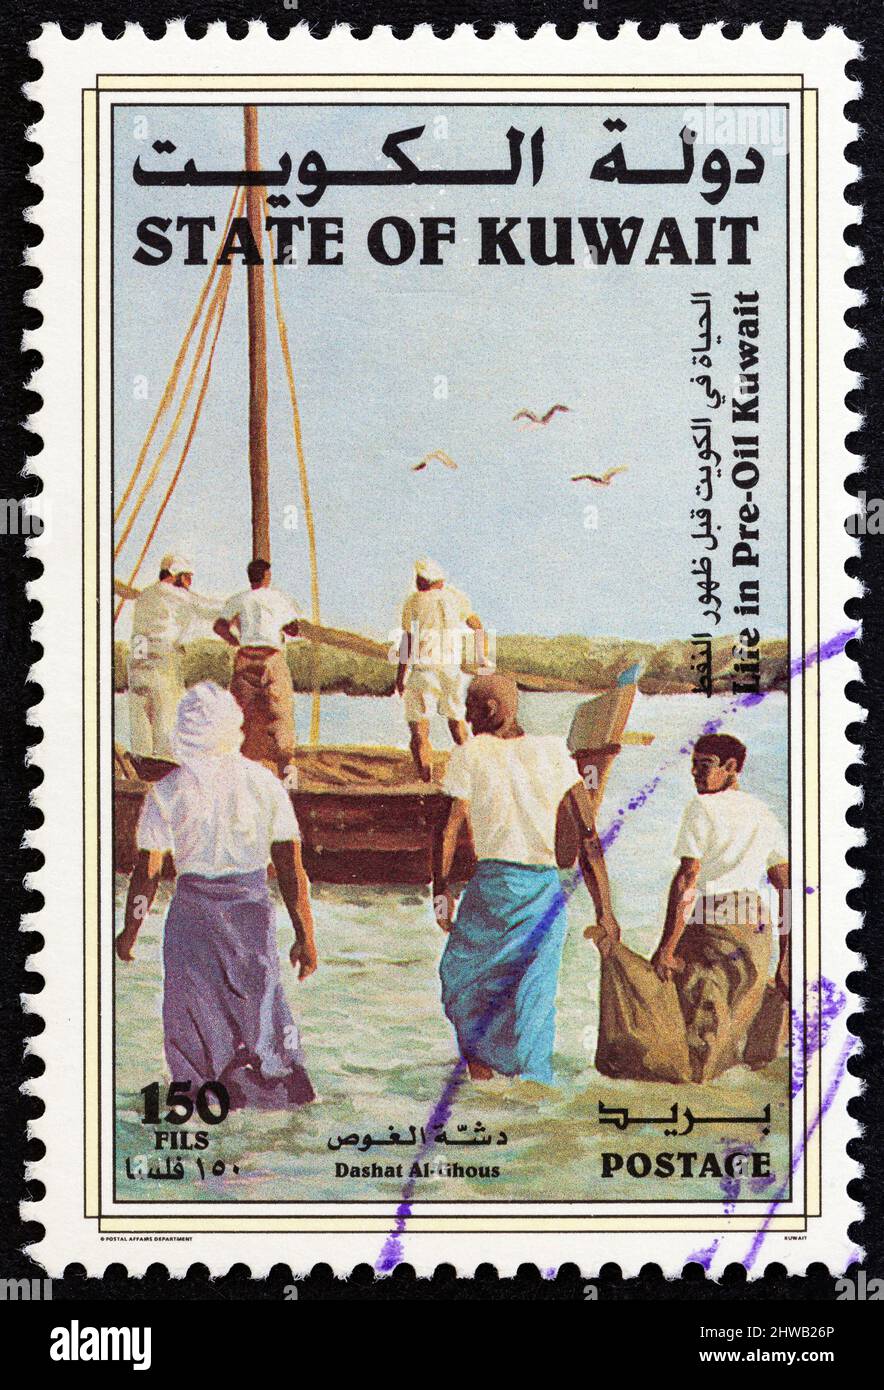 KUWAIT - UM 1998: Eine in Kuwait gedruckte Marke aus der Ausgabe "Life in Pre-Oil Kuwait" zeigt Perlentaucher, die um 1998 zu einem Boot watten. Stockfoto